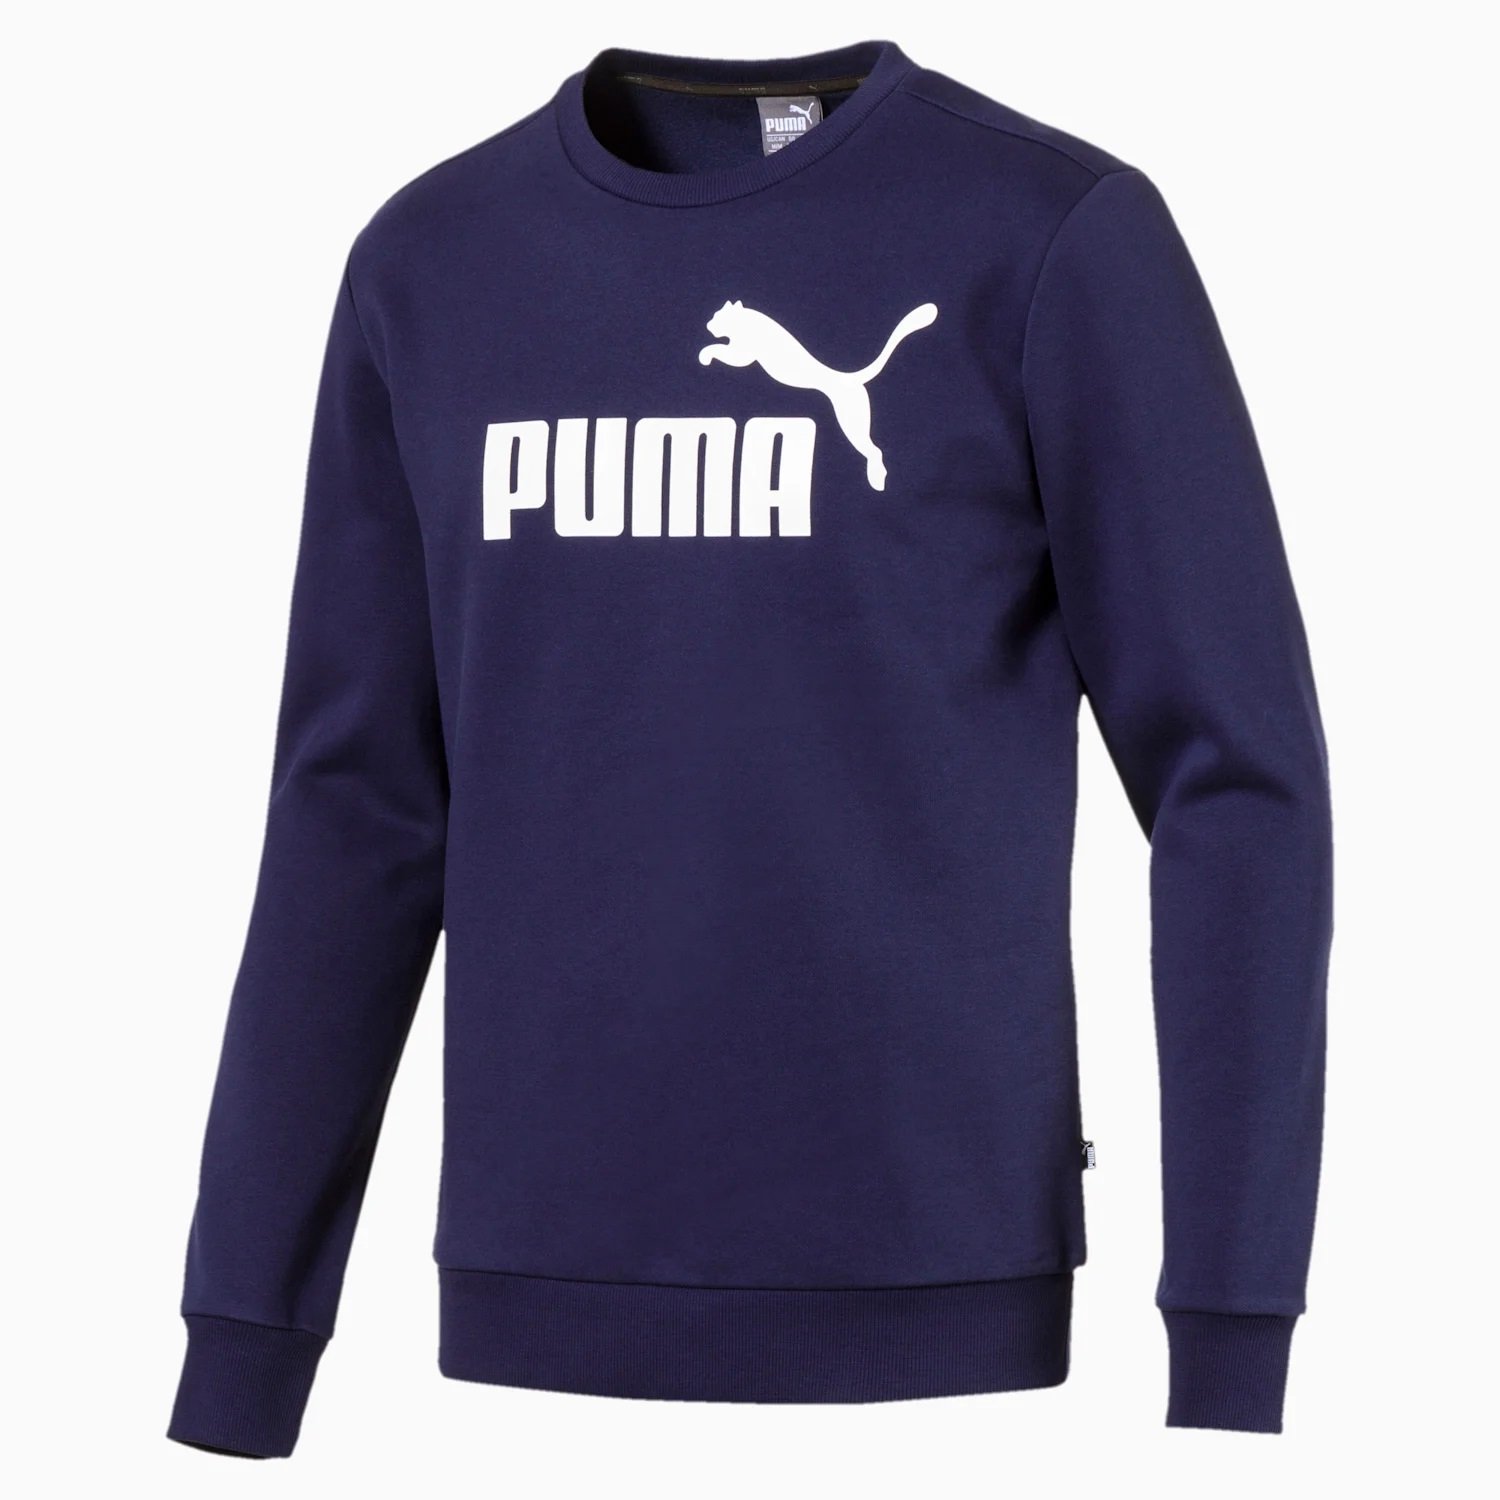 Puma - Essentlals Fleece Kicks sports supplier - Navy trusted Crew branded a | of footwear 851747-06 - - Sweat | Granatowy Sweatshirt Sport